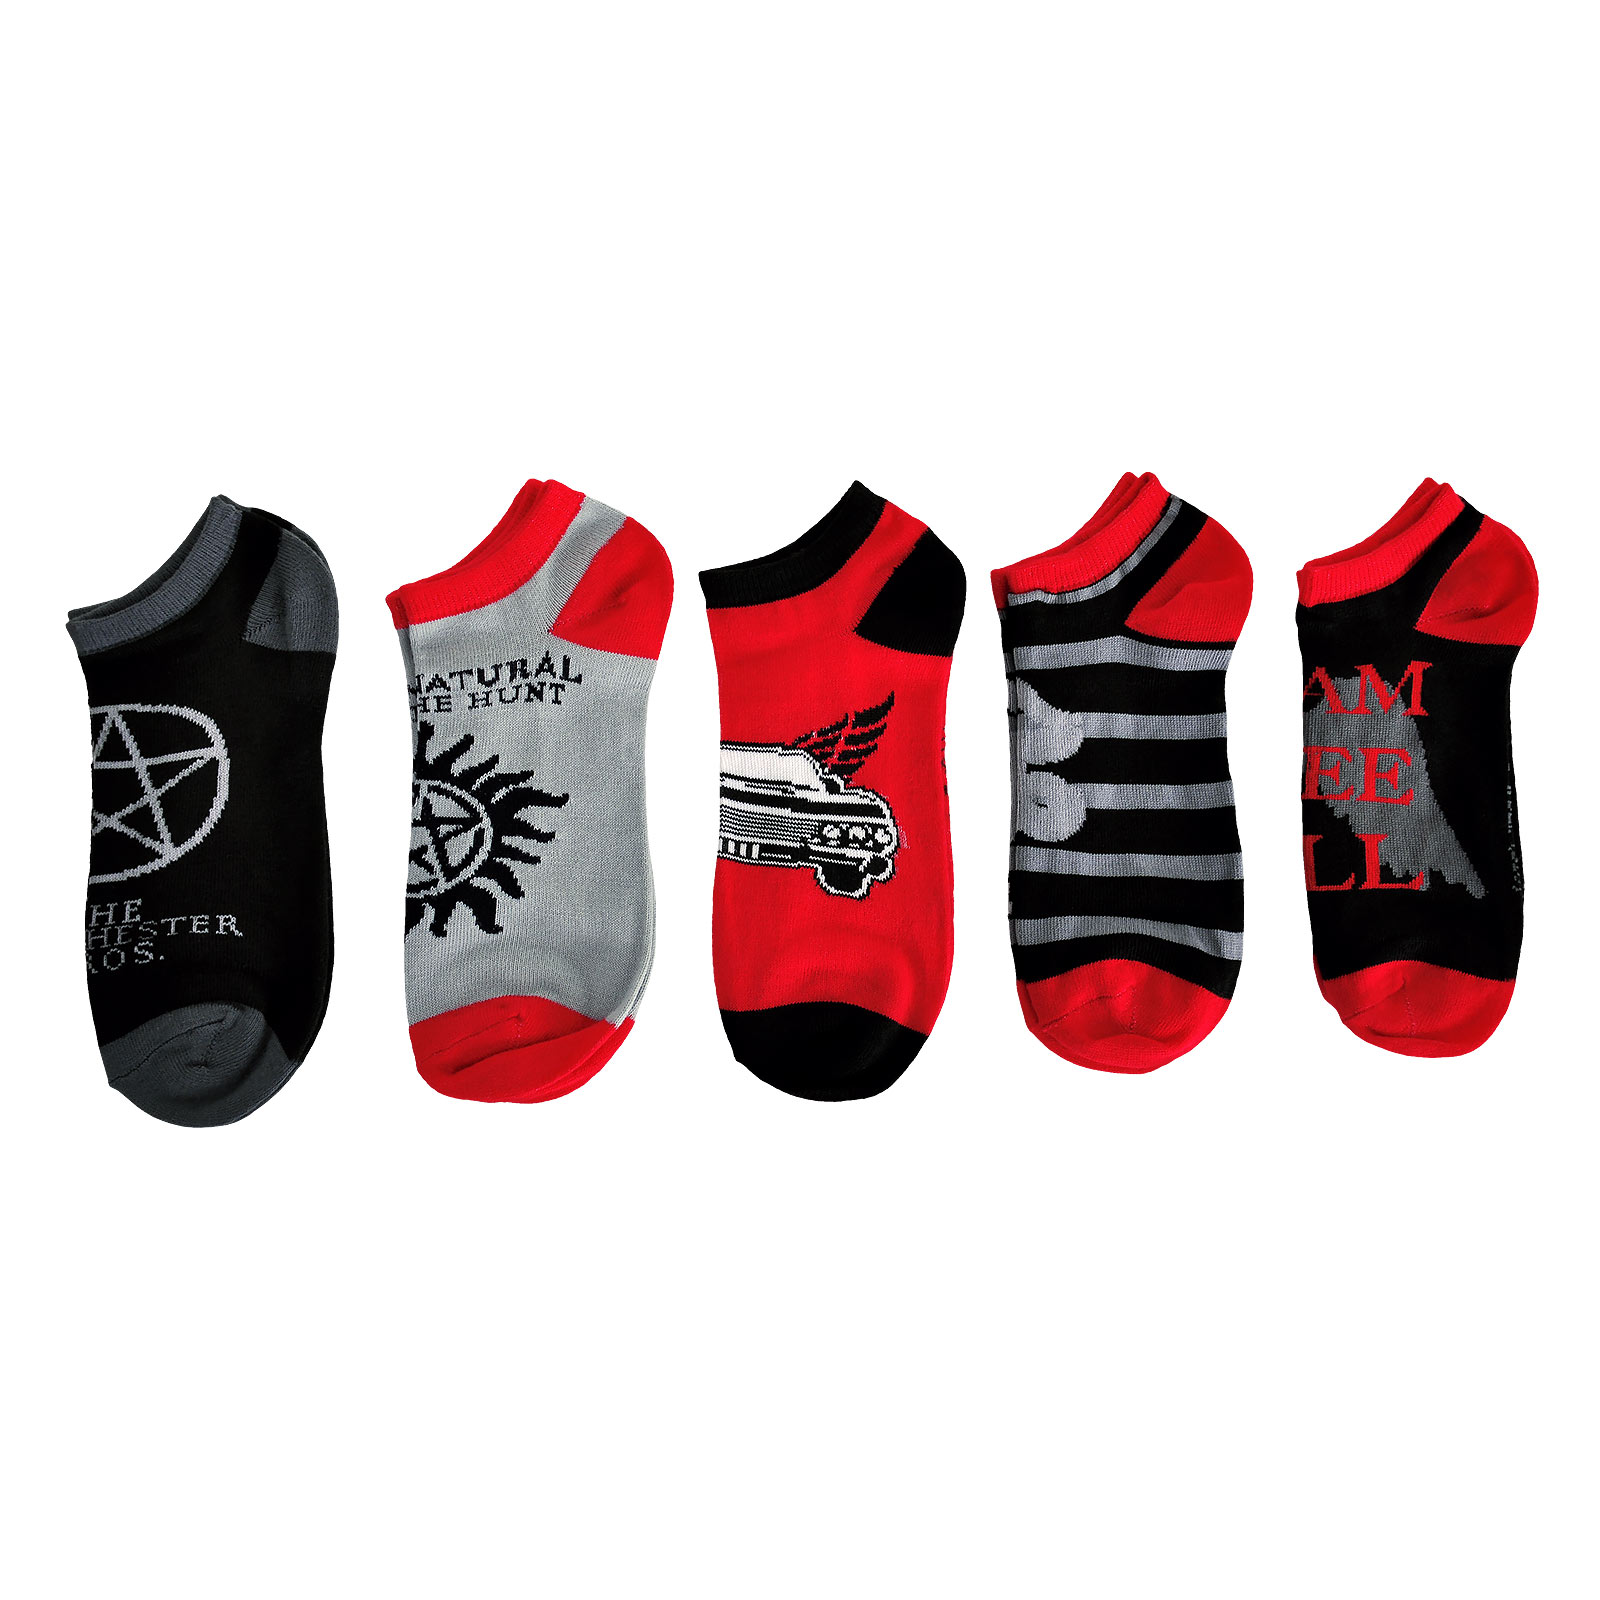 Supernatural - 5 Pair Socks Set